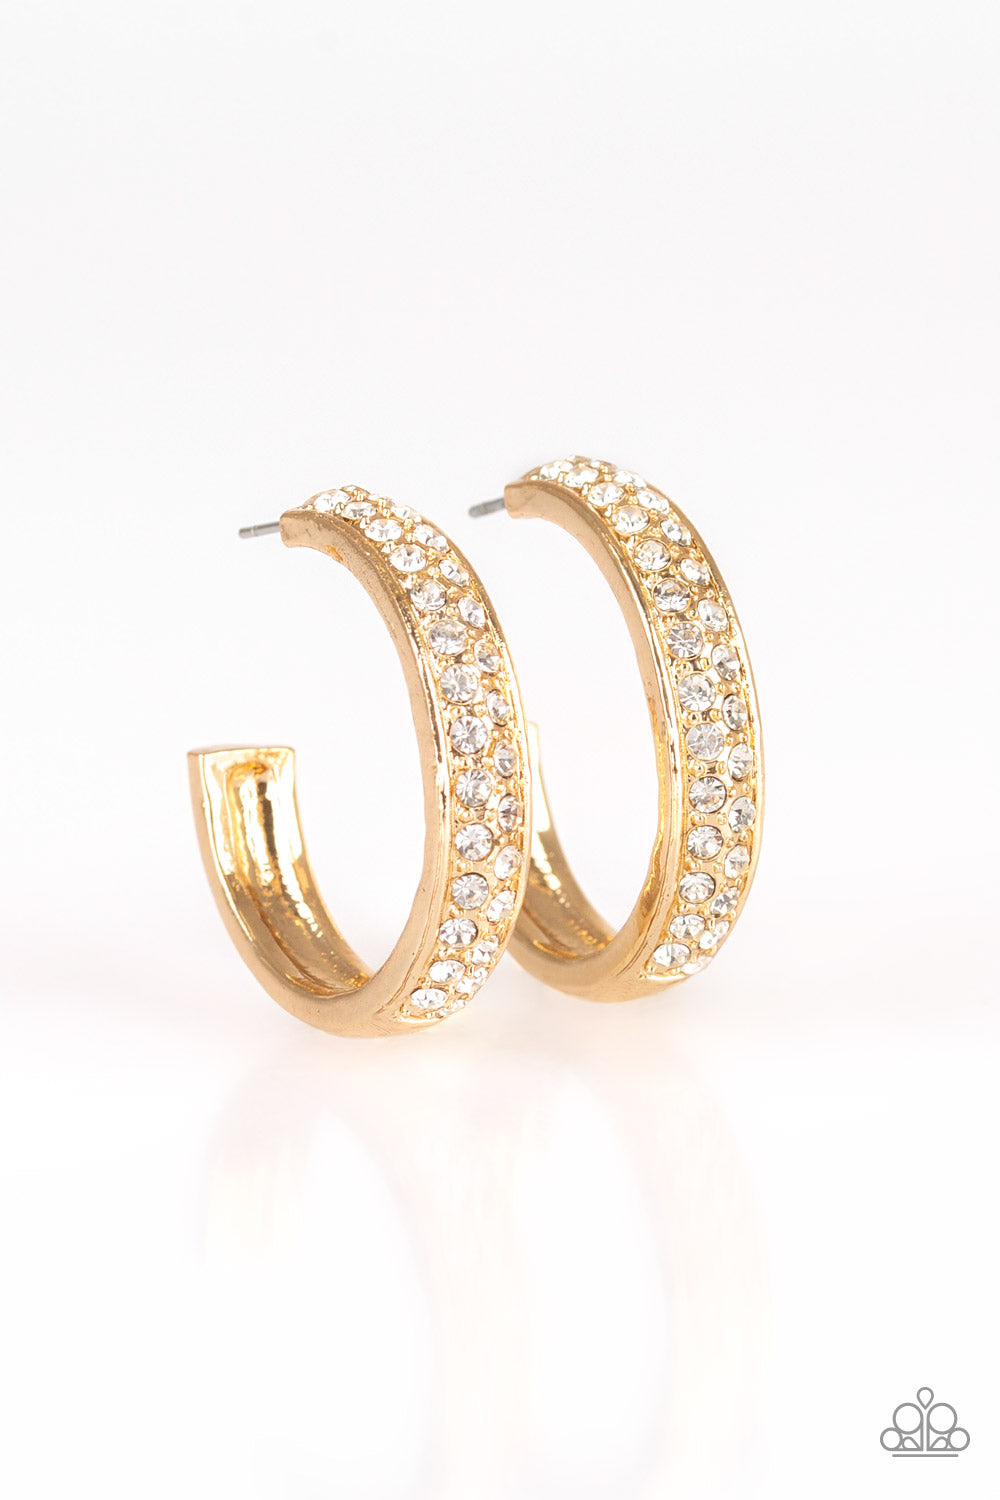 Cash Flow Earrings__Gold